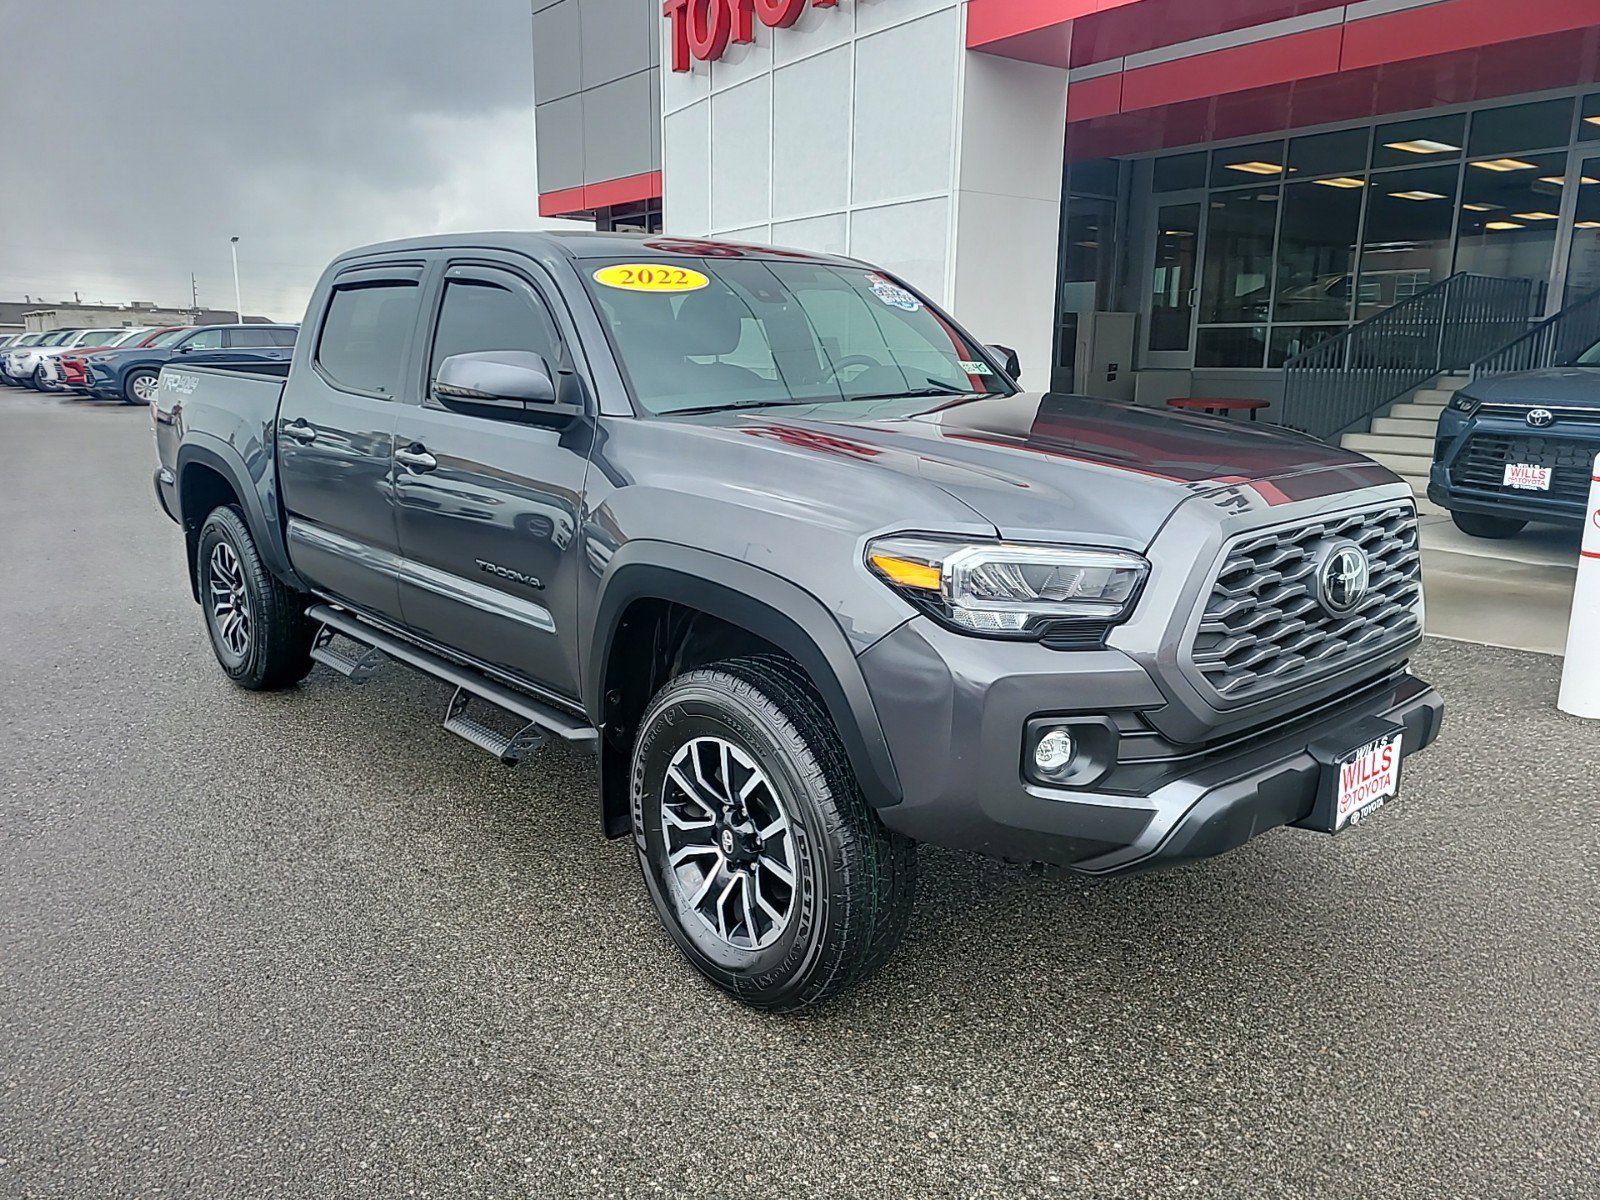 2022 - Toyota - Tacoma 4WD - $40,987